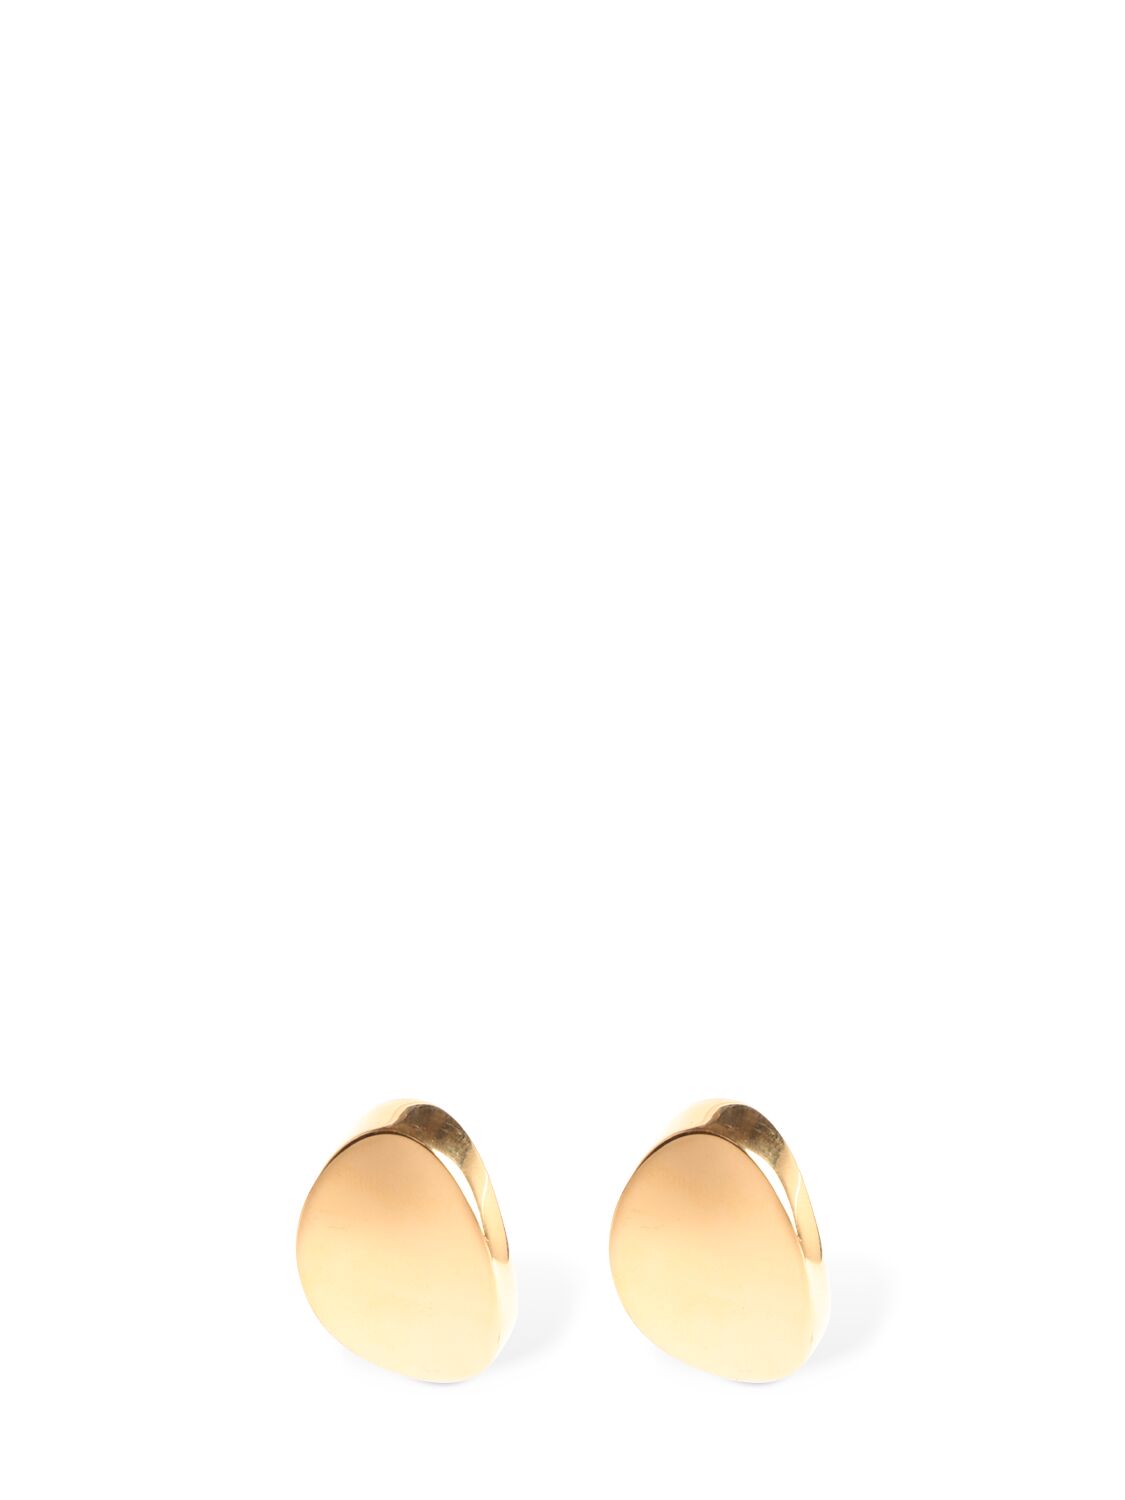 Image of Ory Stud Earrings